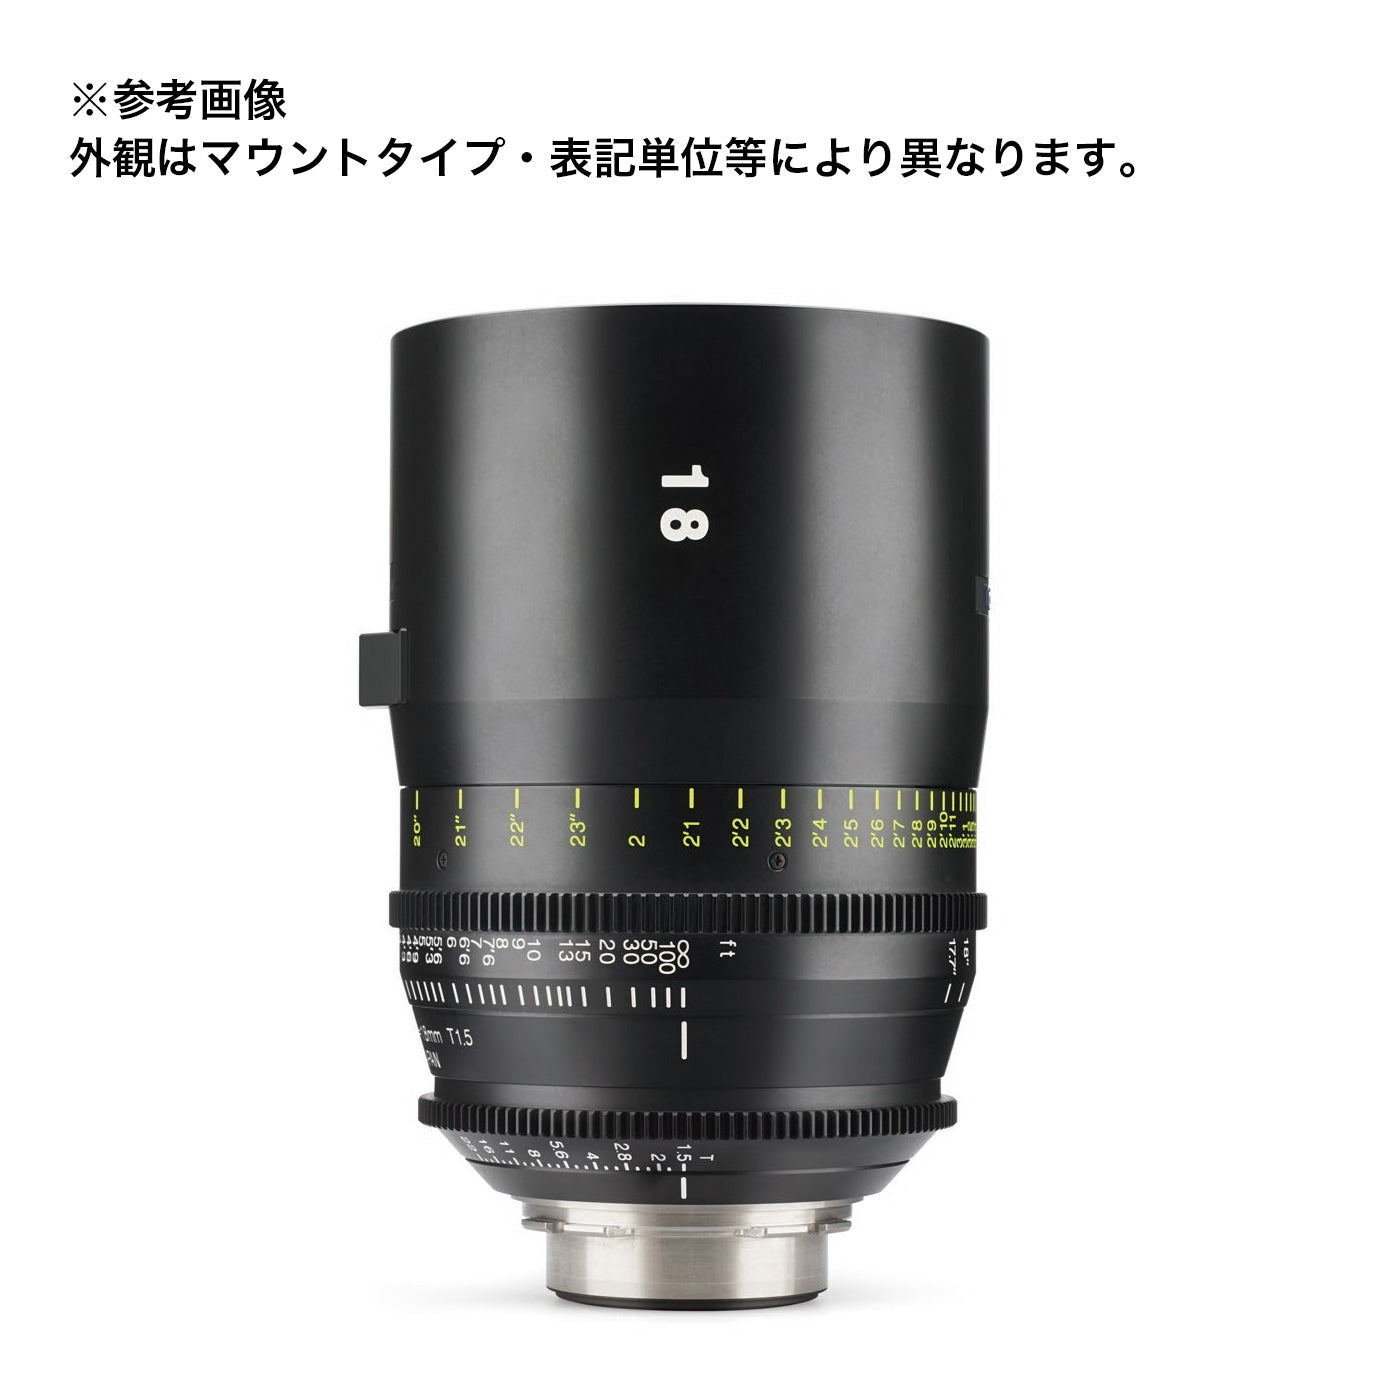 Tokina(トキナー) シネマプライムレンズ VISTA 18mm T1.5 CINEMA LENS EFマウント メートル表記 [264145]